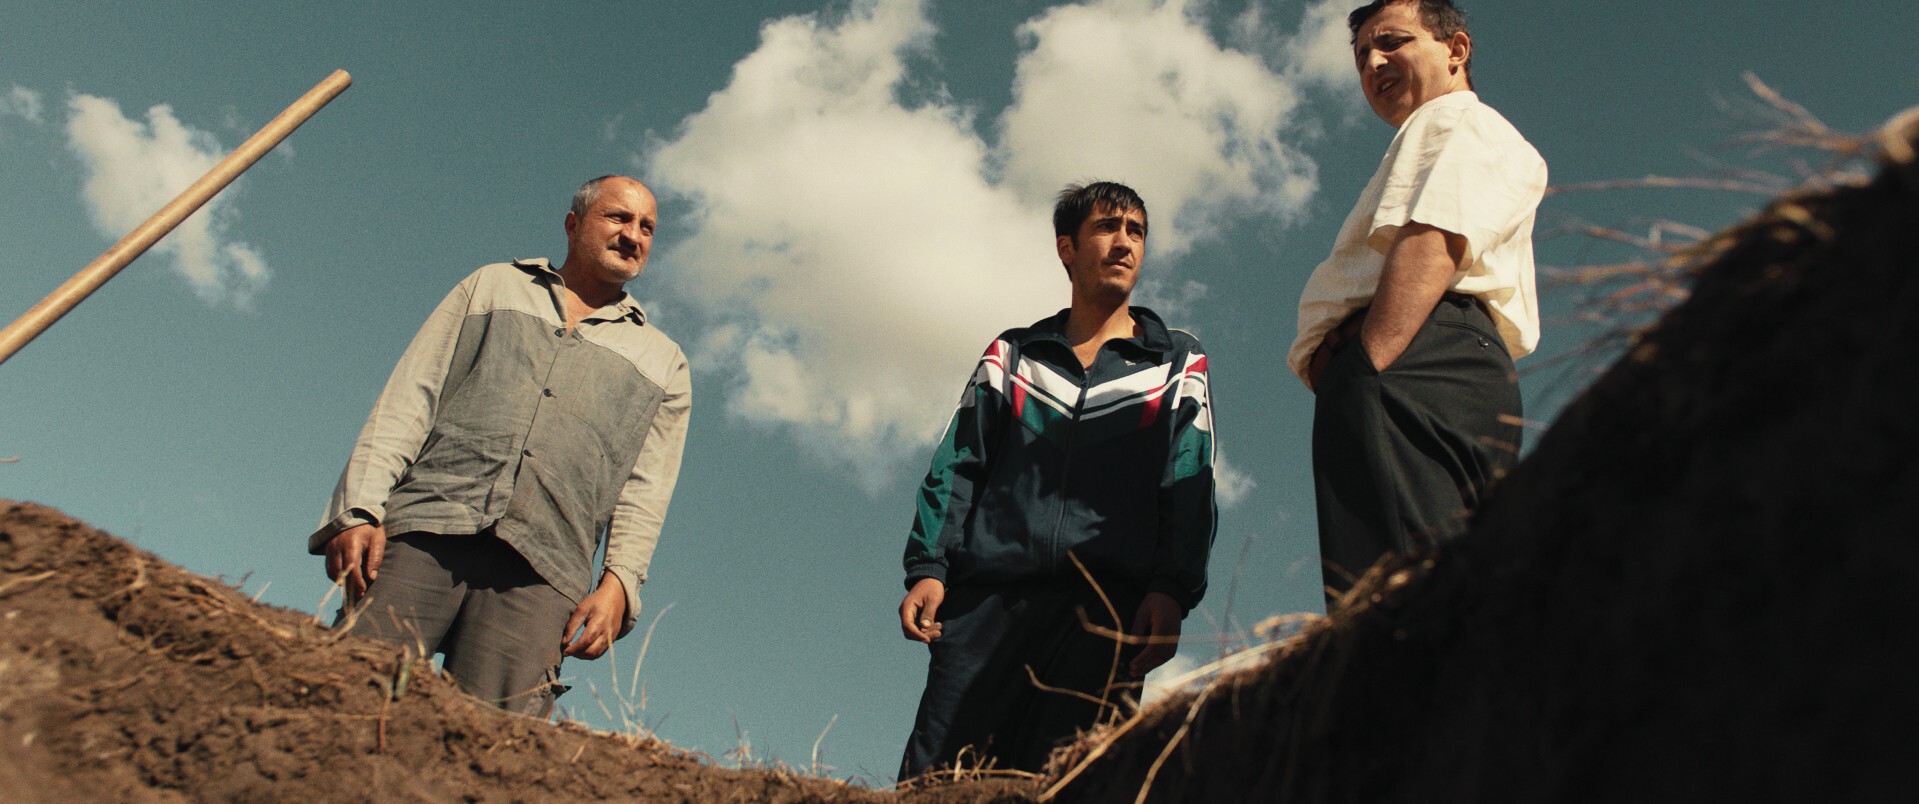 31 de lungmetraje vor concura în cele trei competiții principale ale Festivalului de Film Transilvania